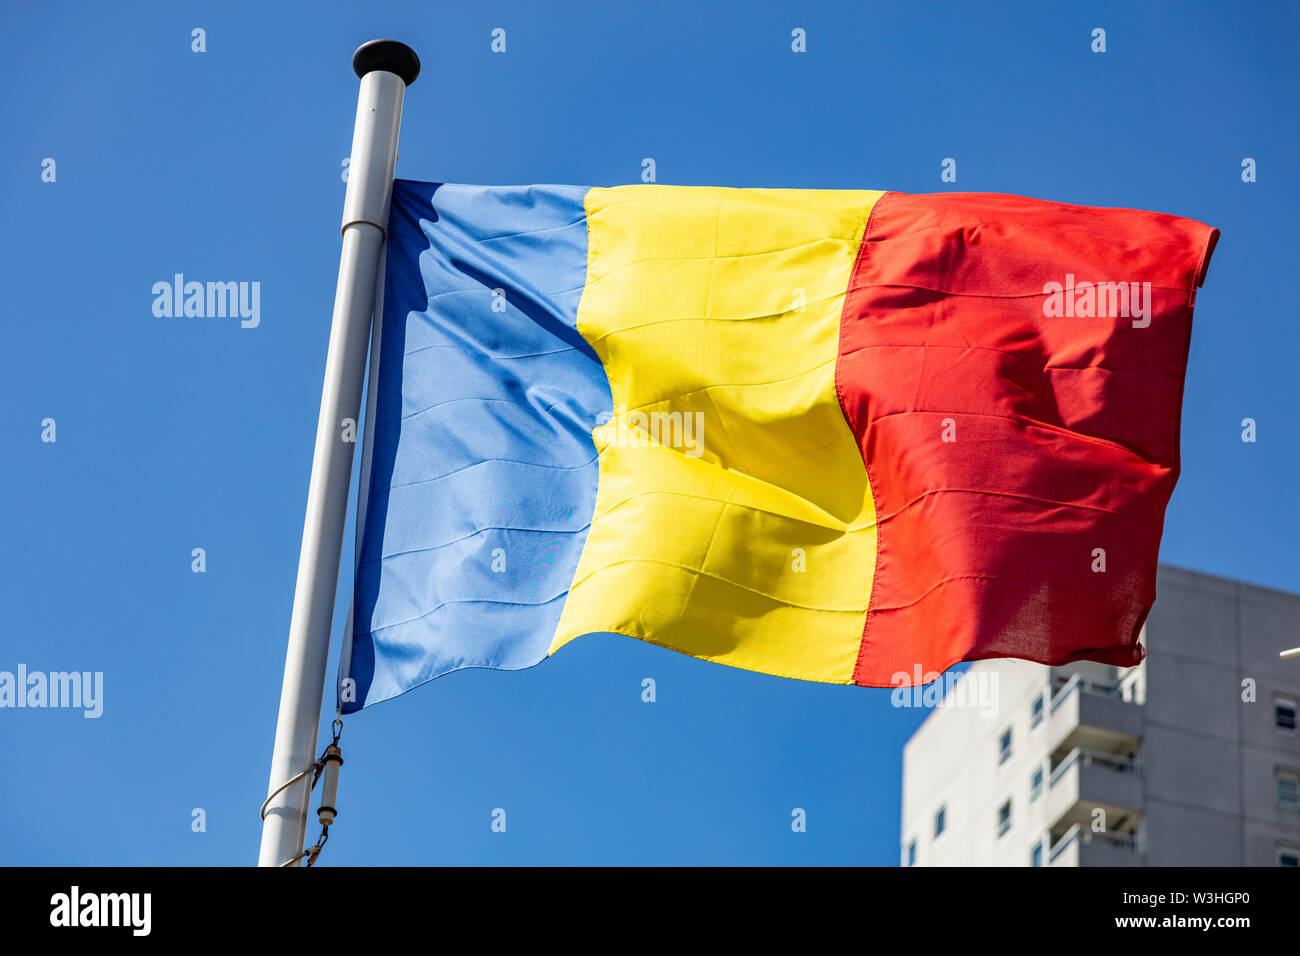 Bandiera della Romania, Rumeno simbolo nazionale sventolare contro il cielo blu chiaro, giornata di sole Foto Stock